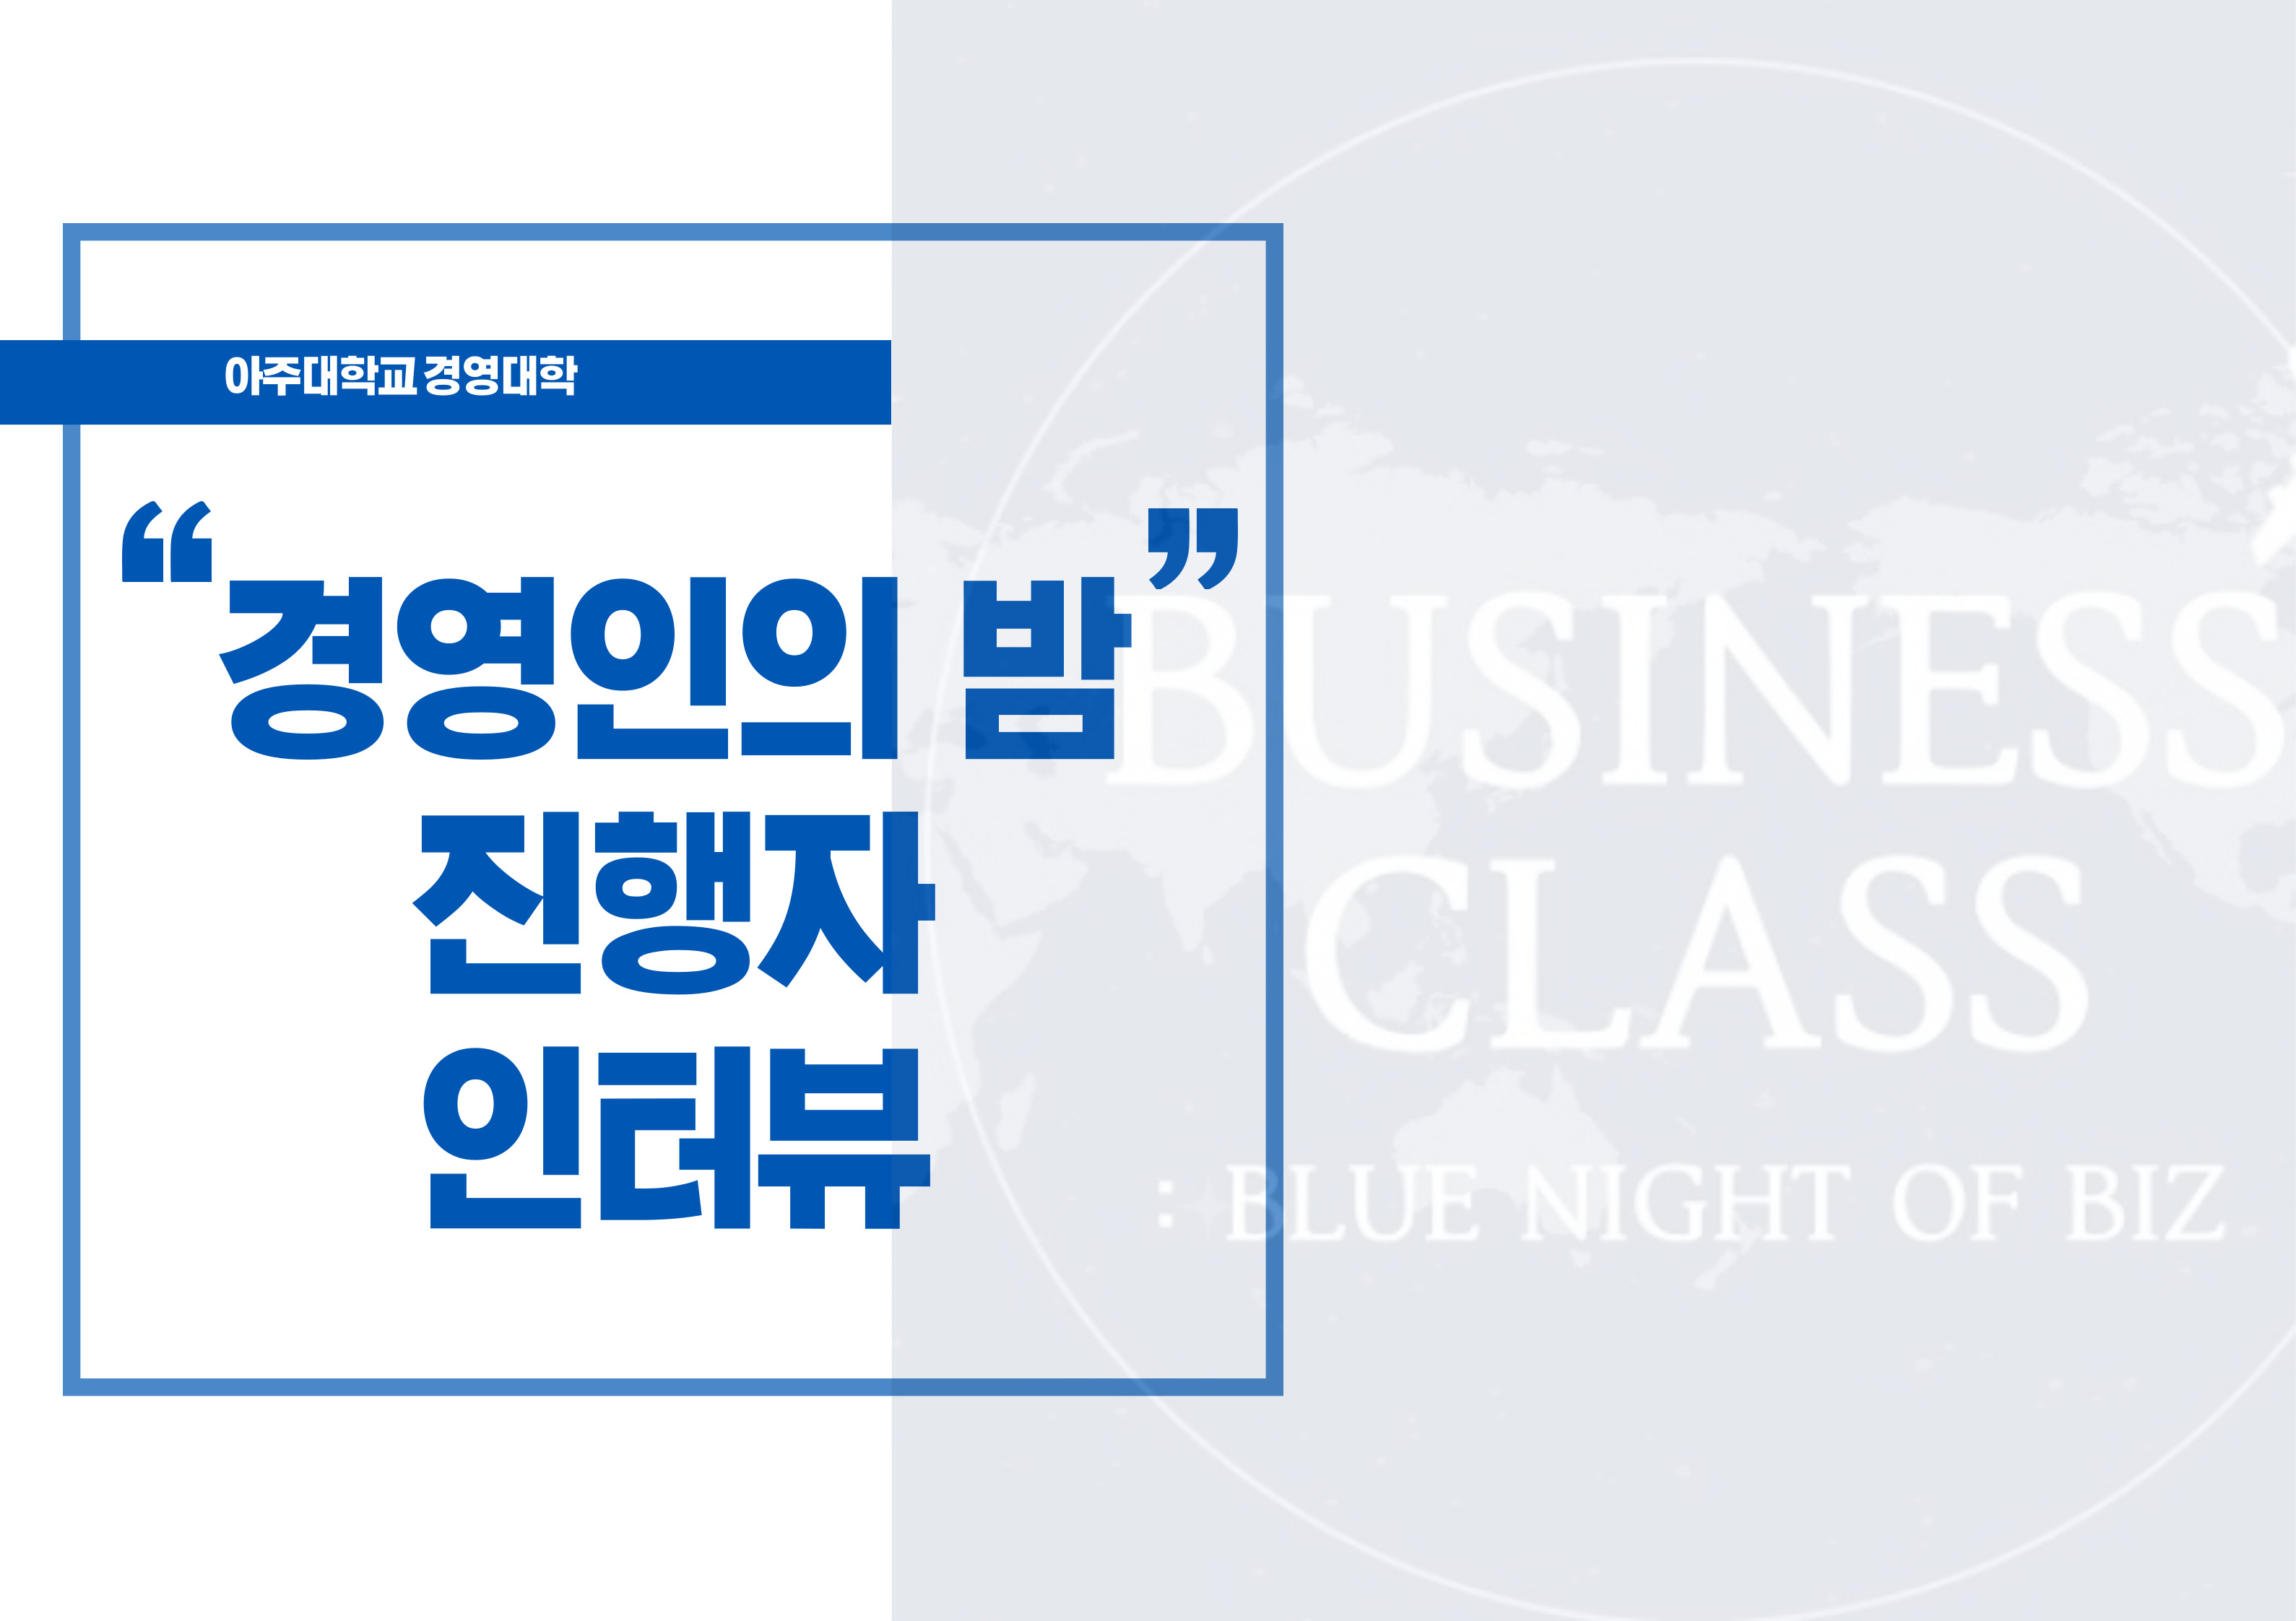 카드뉴스 : 경영인의 밤 (2) 진행자 인터뷰